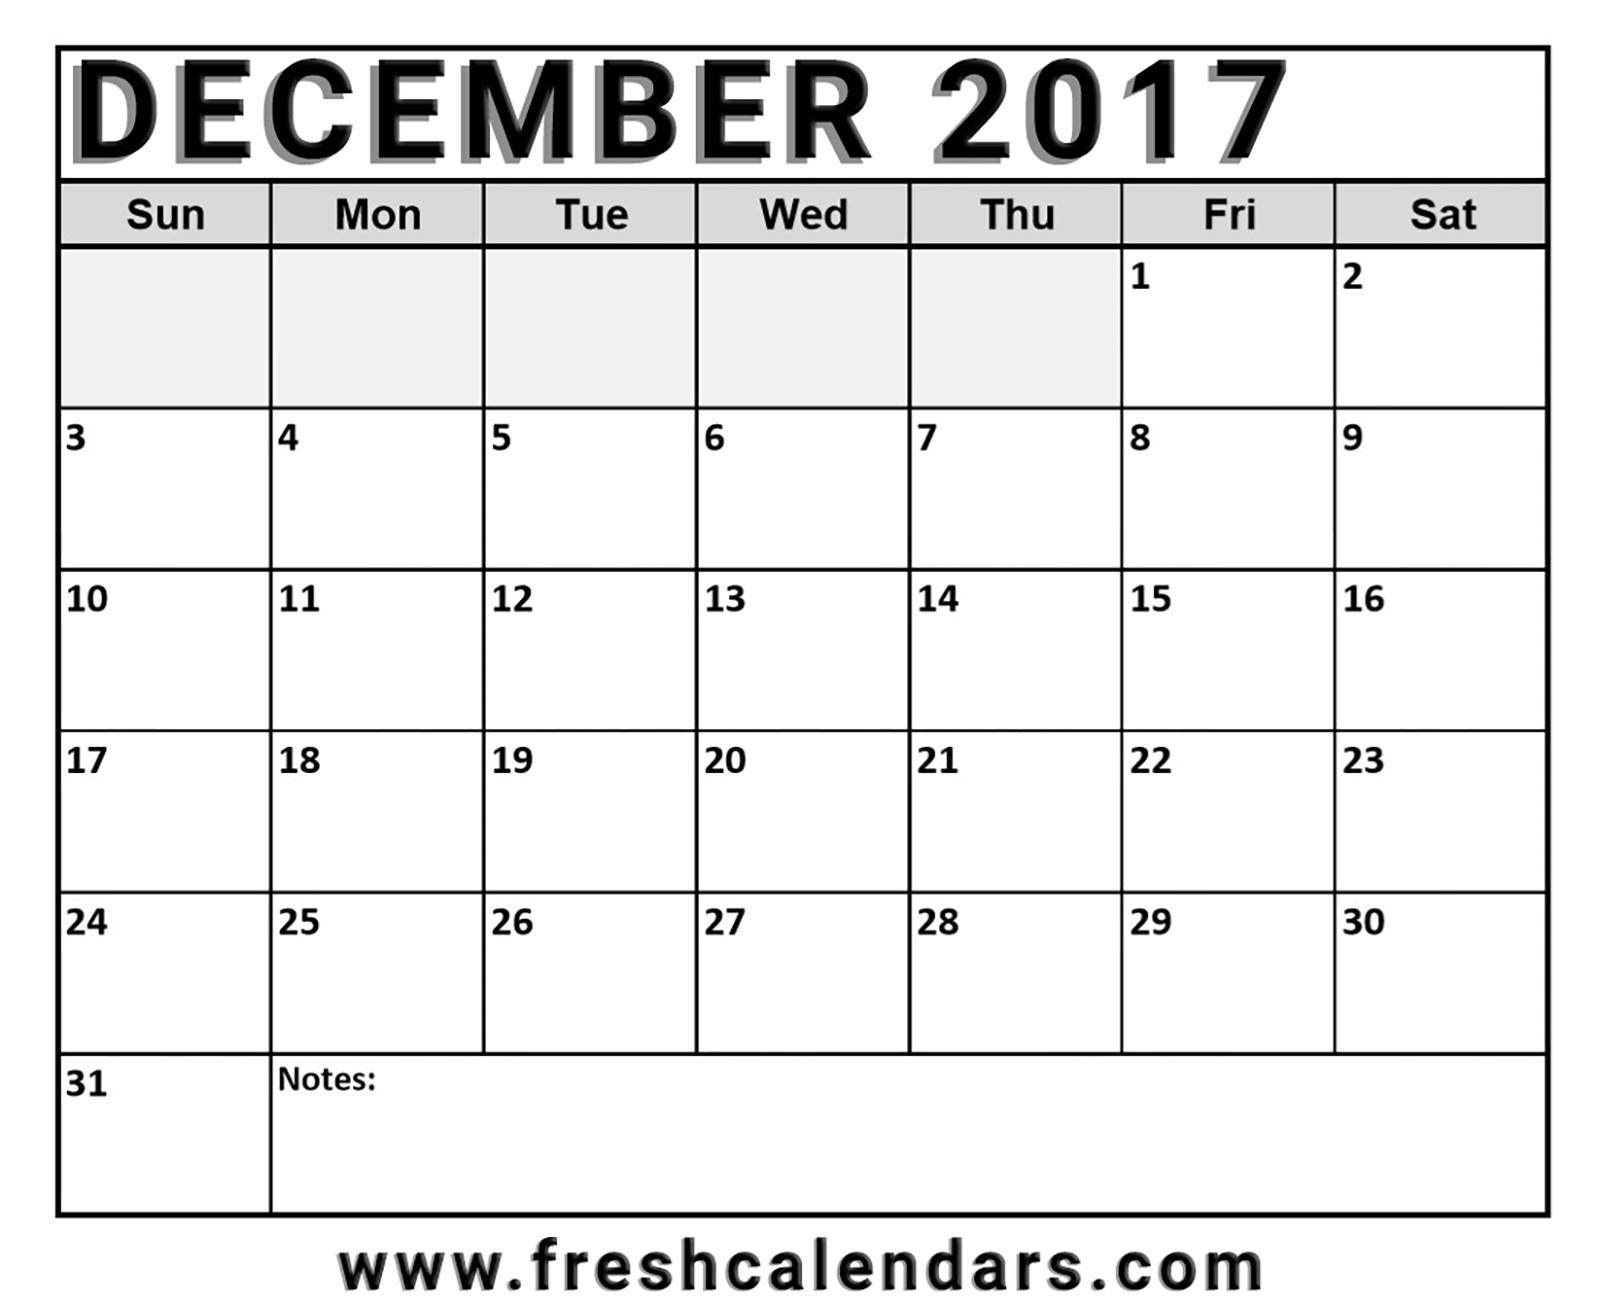 December 2017 Calendar Template 1271